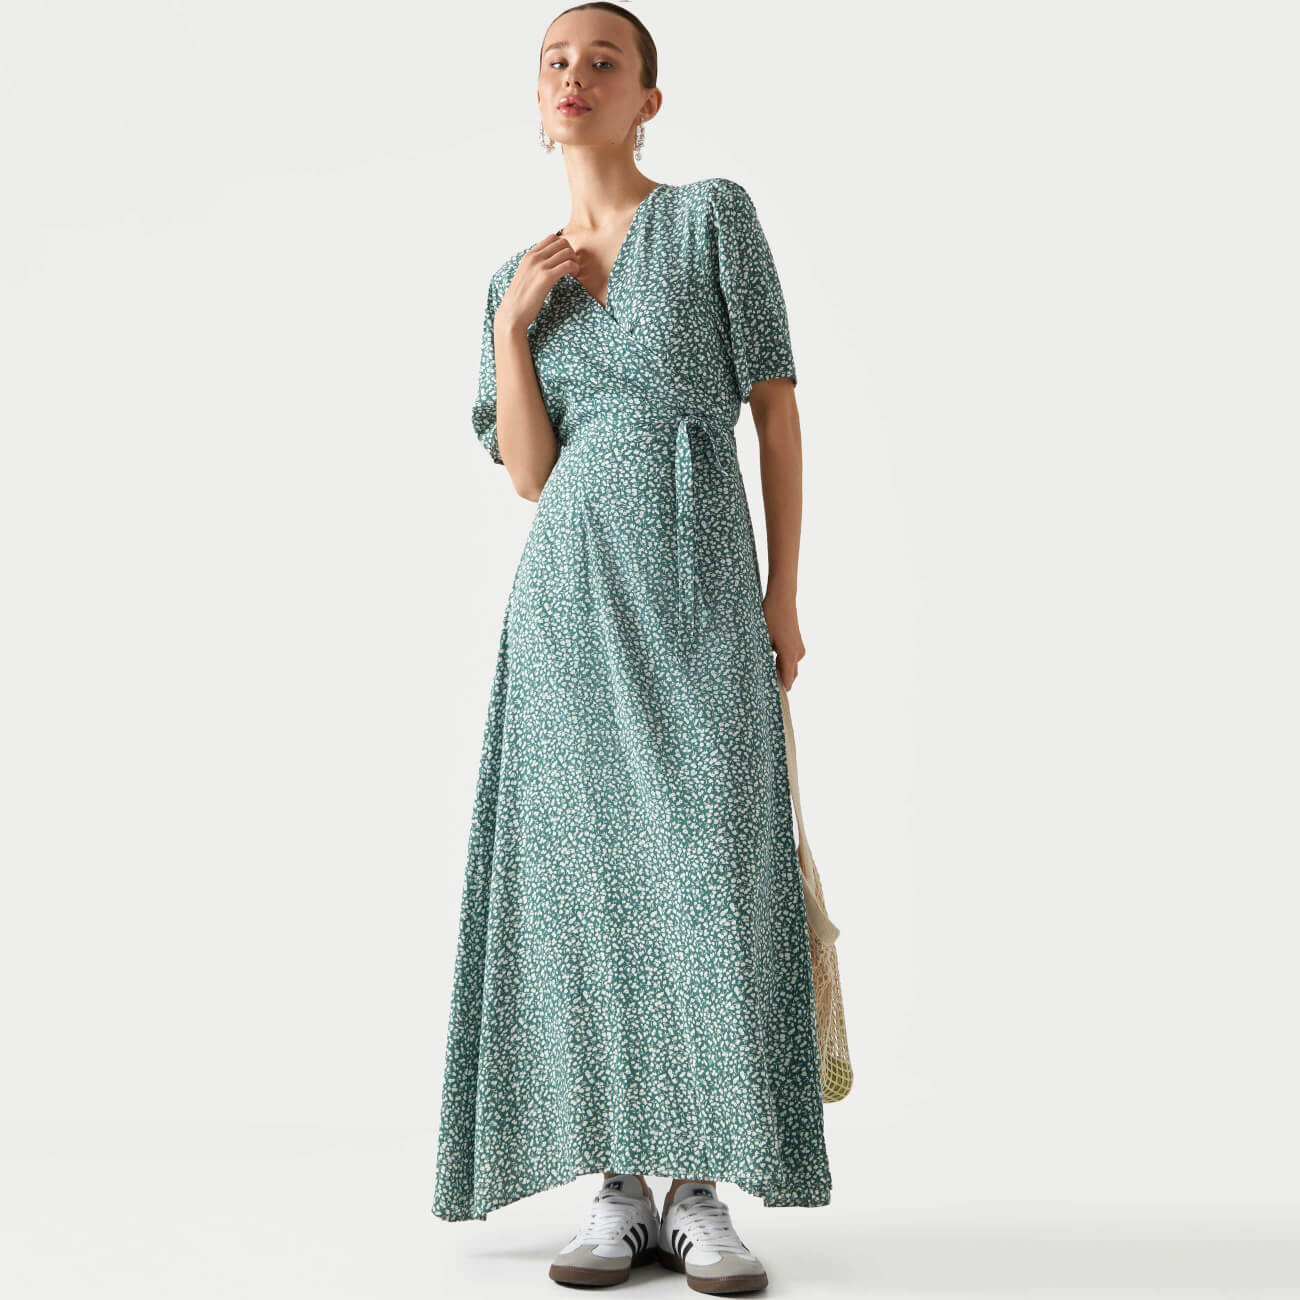 Платье женское, р. S, миди, с коротким рукавом, вискоза, зеленое, Цветы, Marcia